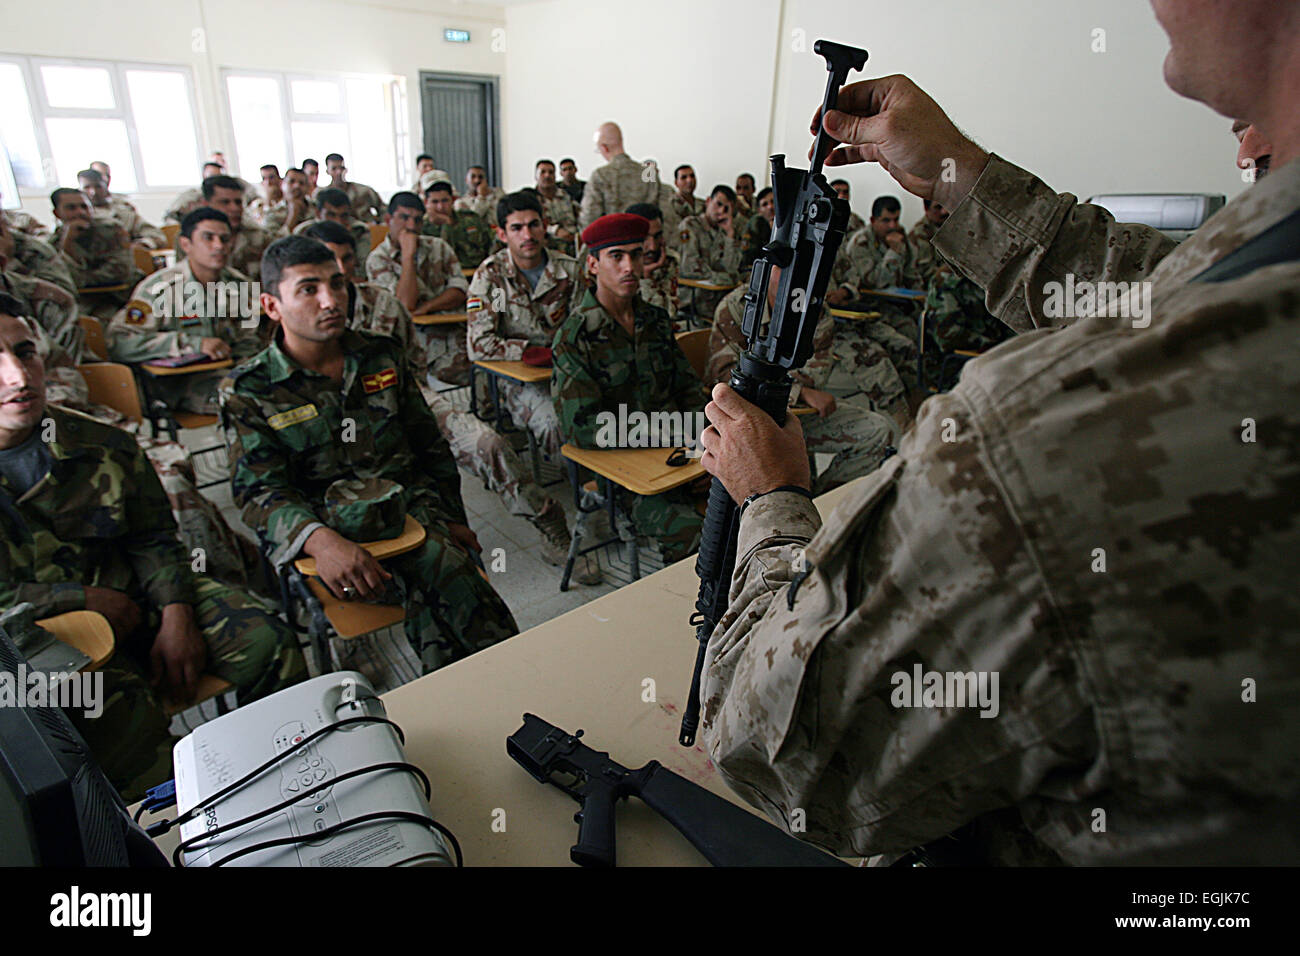 Noi lancia Marine Cpl. Sterling N. Hagan mostra soldati dell'esercito iracheno dal 7 IA Divisione corretto smontare e riassemblare i metodi per la M-16 fucile serie durante il corso di formazione il 7 agosto 2008 a Camp Mejide, Iraq. Foto Stock